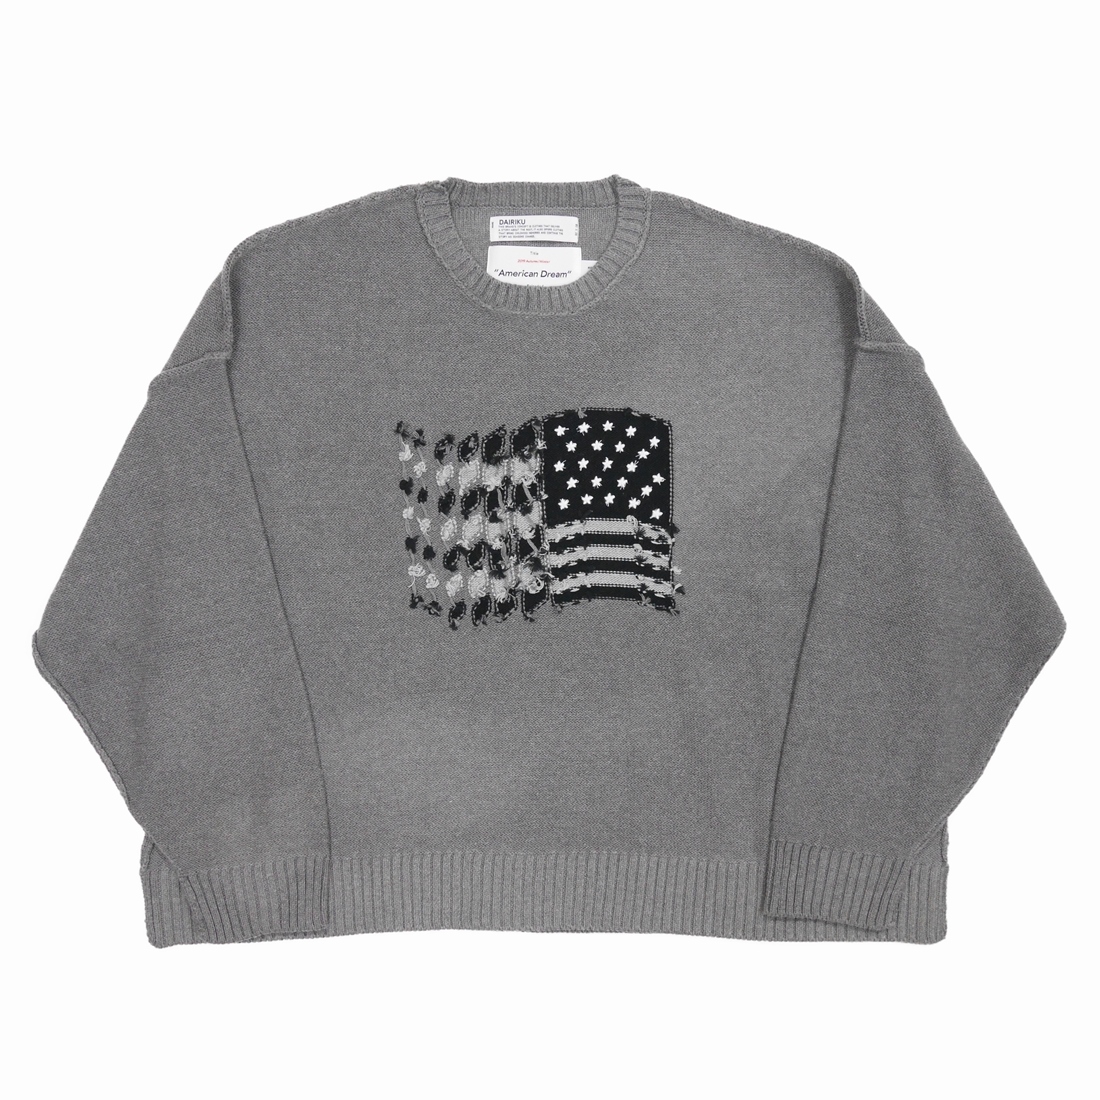 定番スタイル DAIRIKU American Dream Inside-out Knit